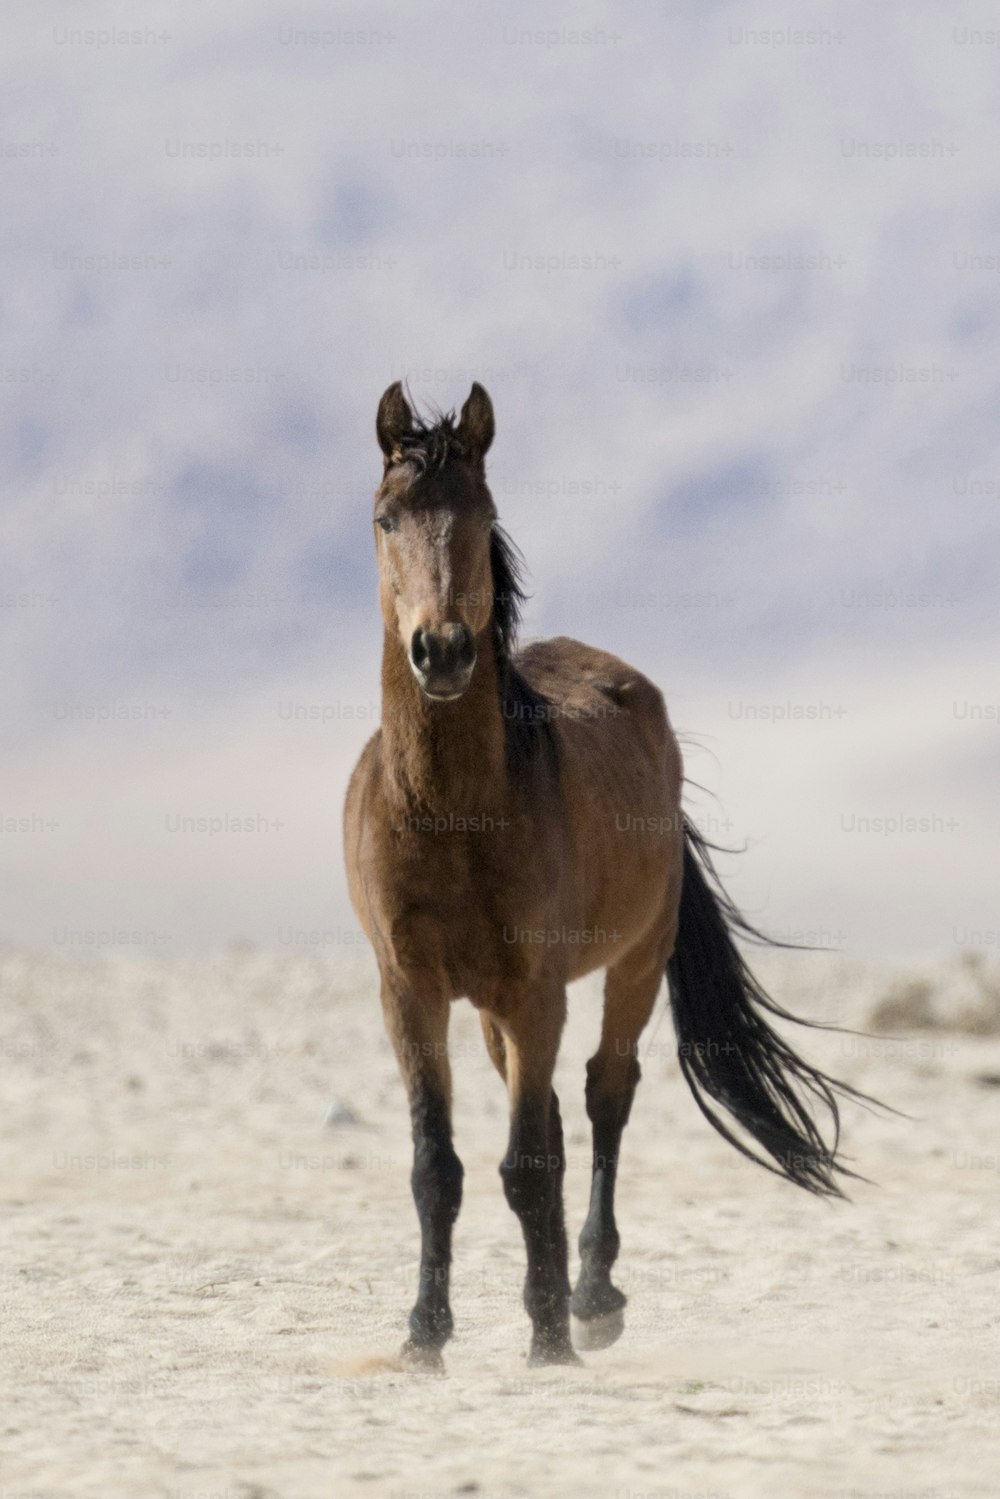 Wild Namibian desert horse.